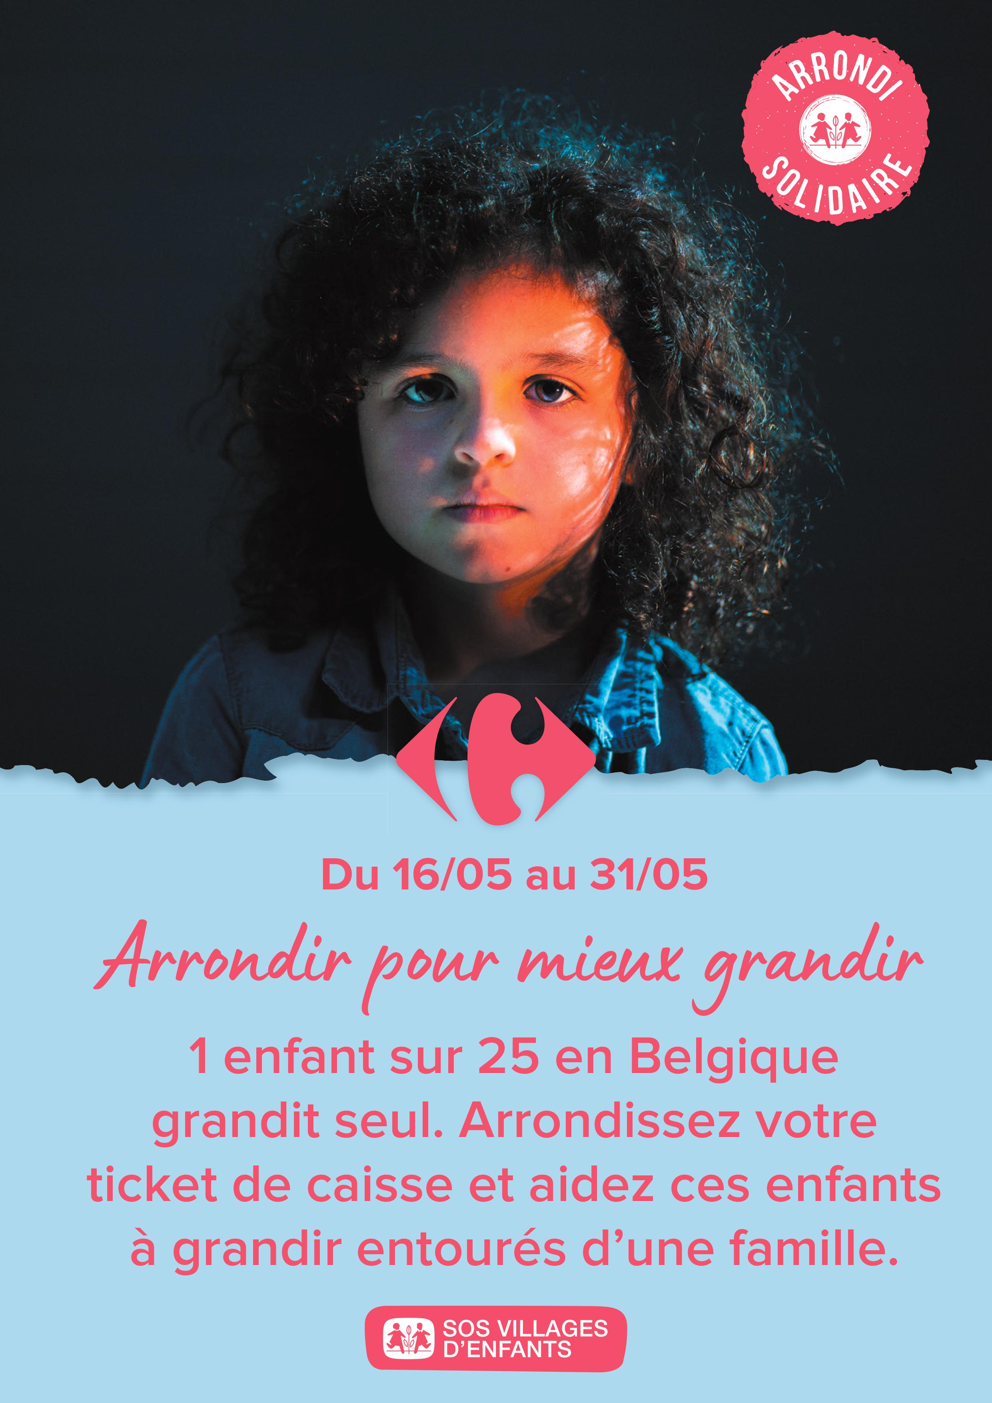 Carrefour organise un arrondi solidaire pour soutenir SOS Villages d’enfants durant la dernière quinzaine de mai